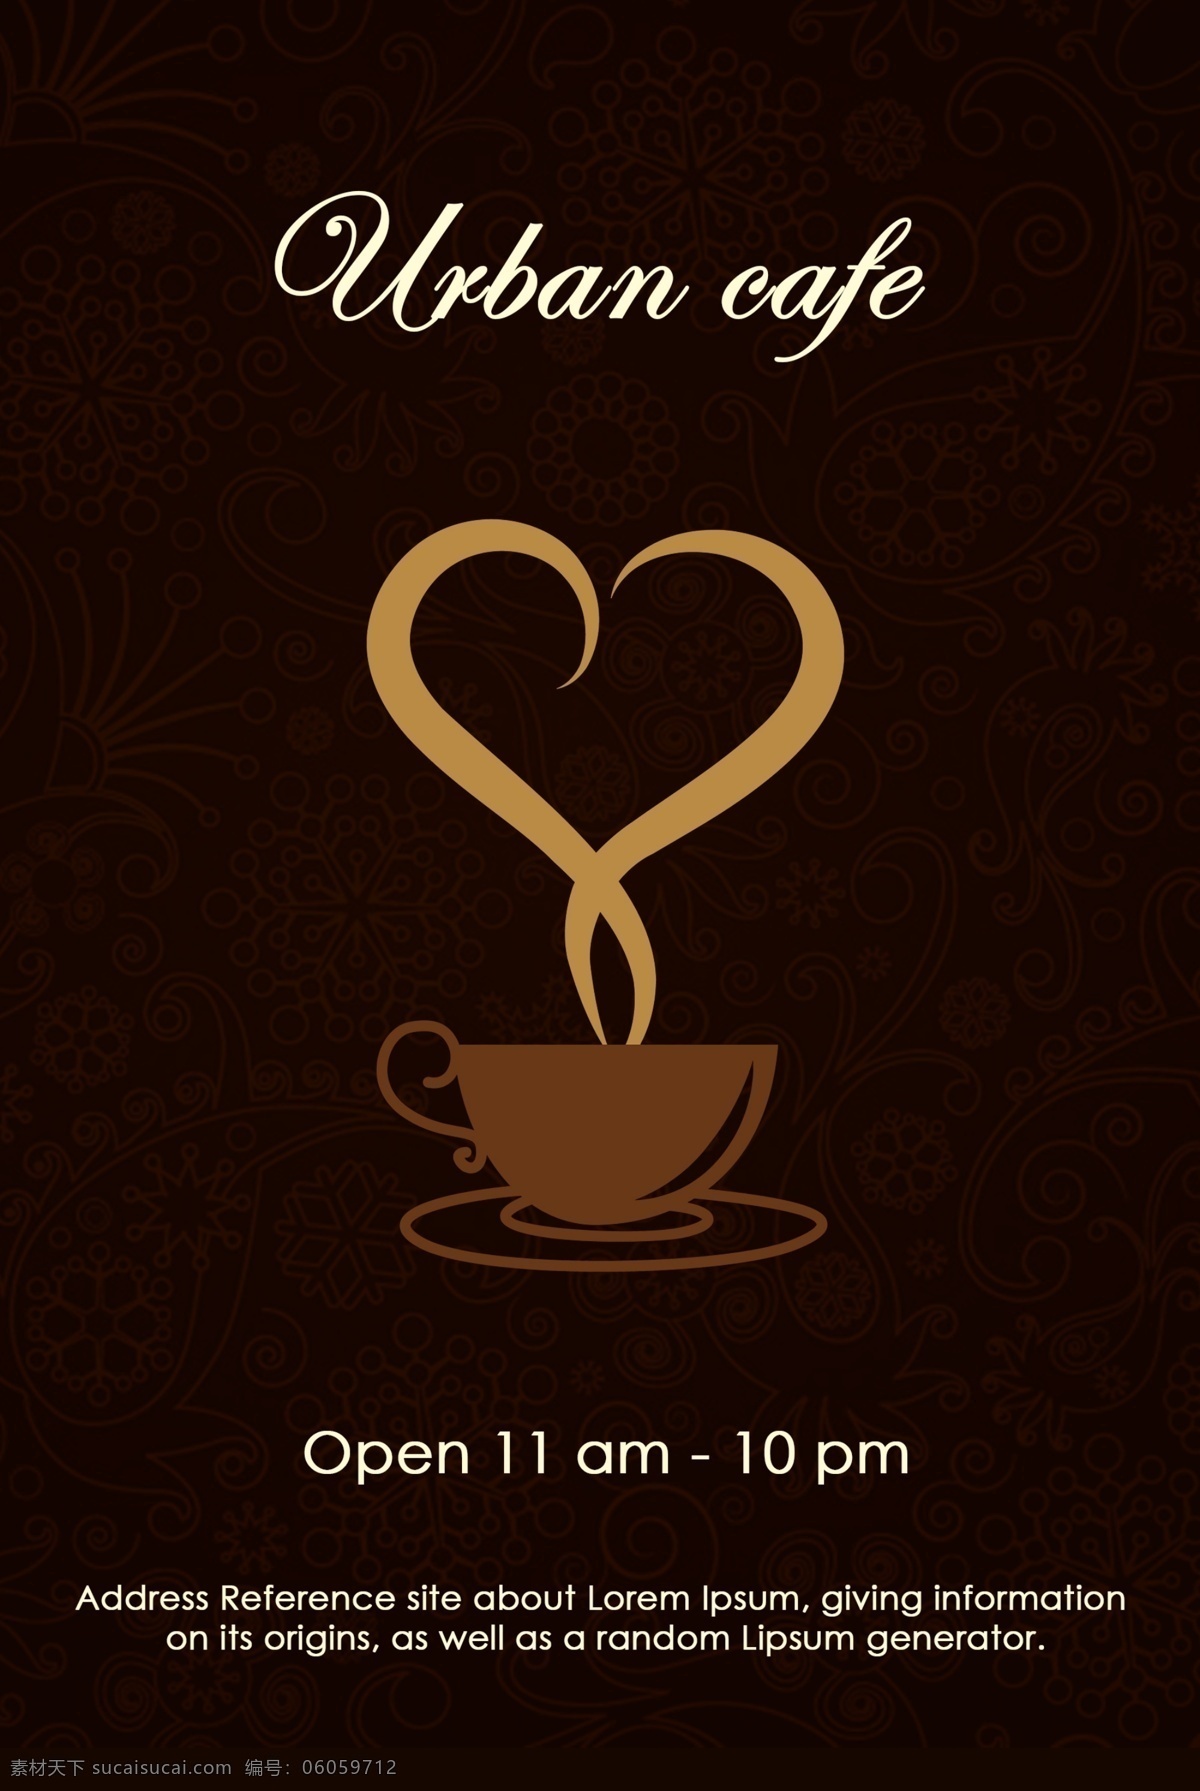 咖啡厅海报 咖啡店传单 咖啡 咖啡店 咖啡馆海报 咖啡馆传单 咖啡杯子矢量